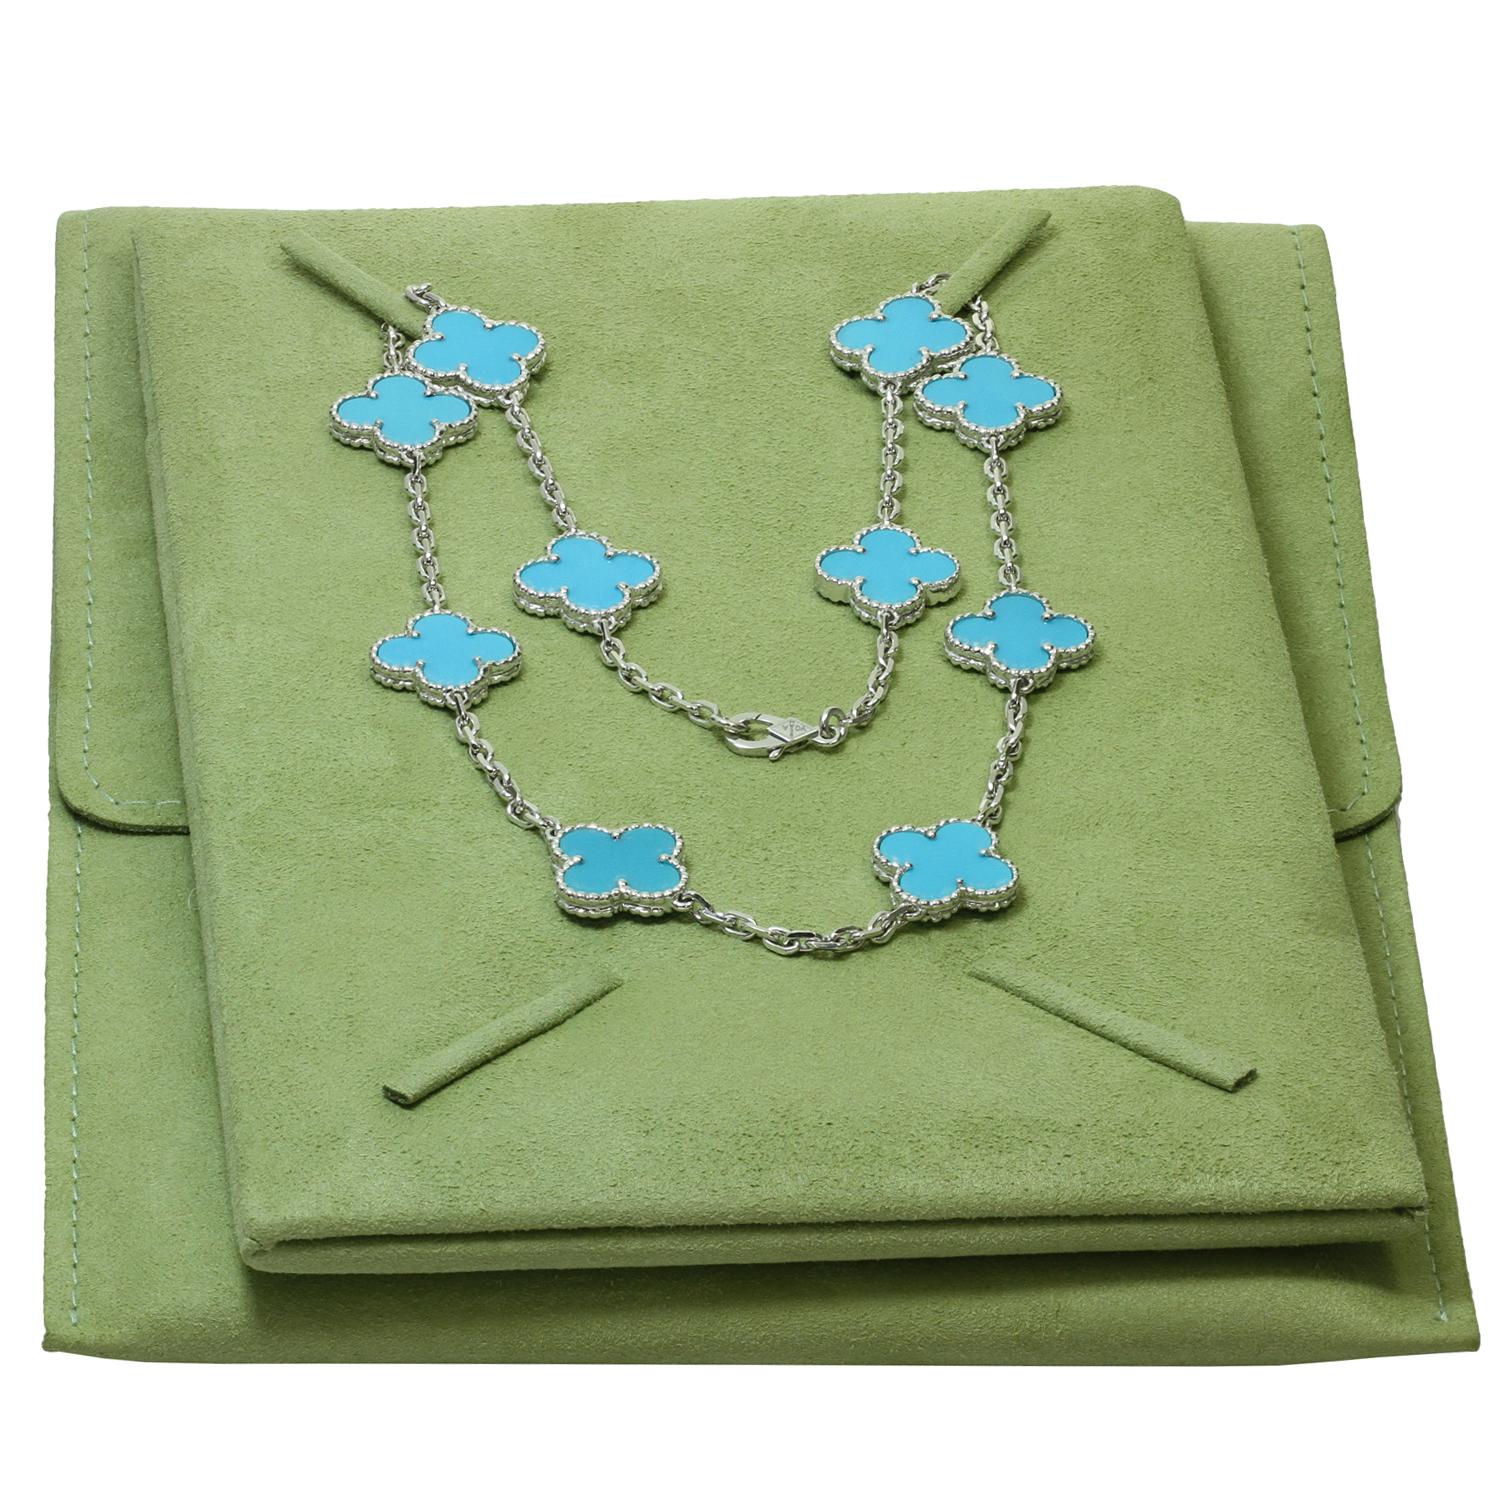 Ce magnifique collier rare Van Cleef & Arpels de la collection Vintage Alhambra est réalisé en or blanc 18 carats et comporte 10 motifs de trèfles porte-bonheur incrustés de turquoises bleues dans des sertissages de perles rondes. Fabriqué en France